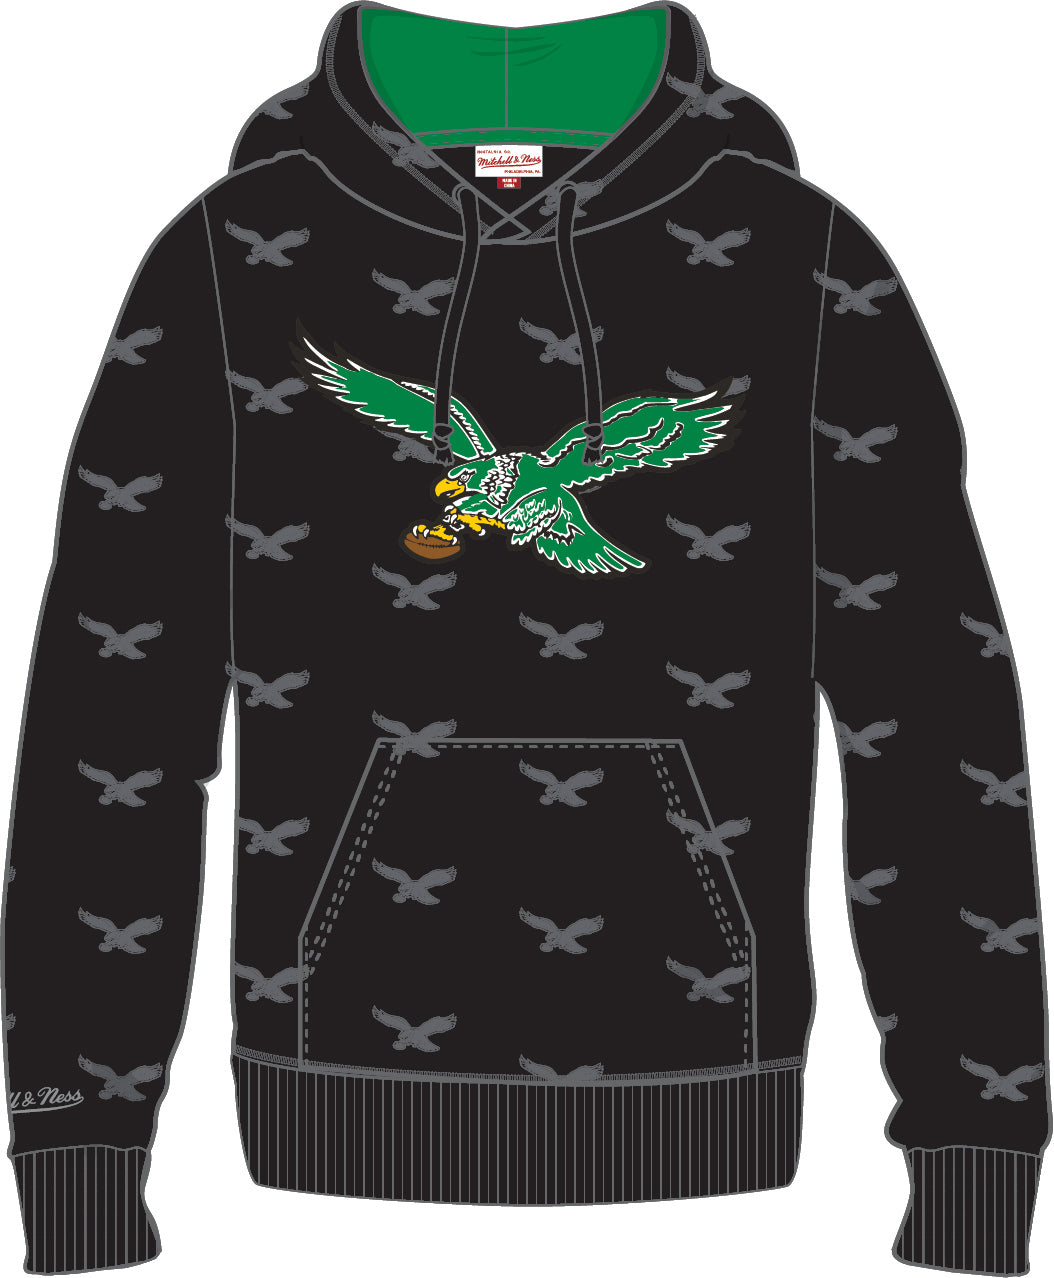 throwback eagles hoodie